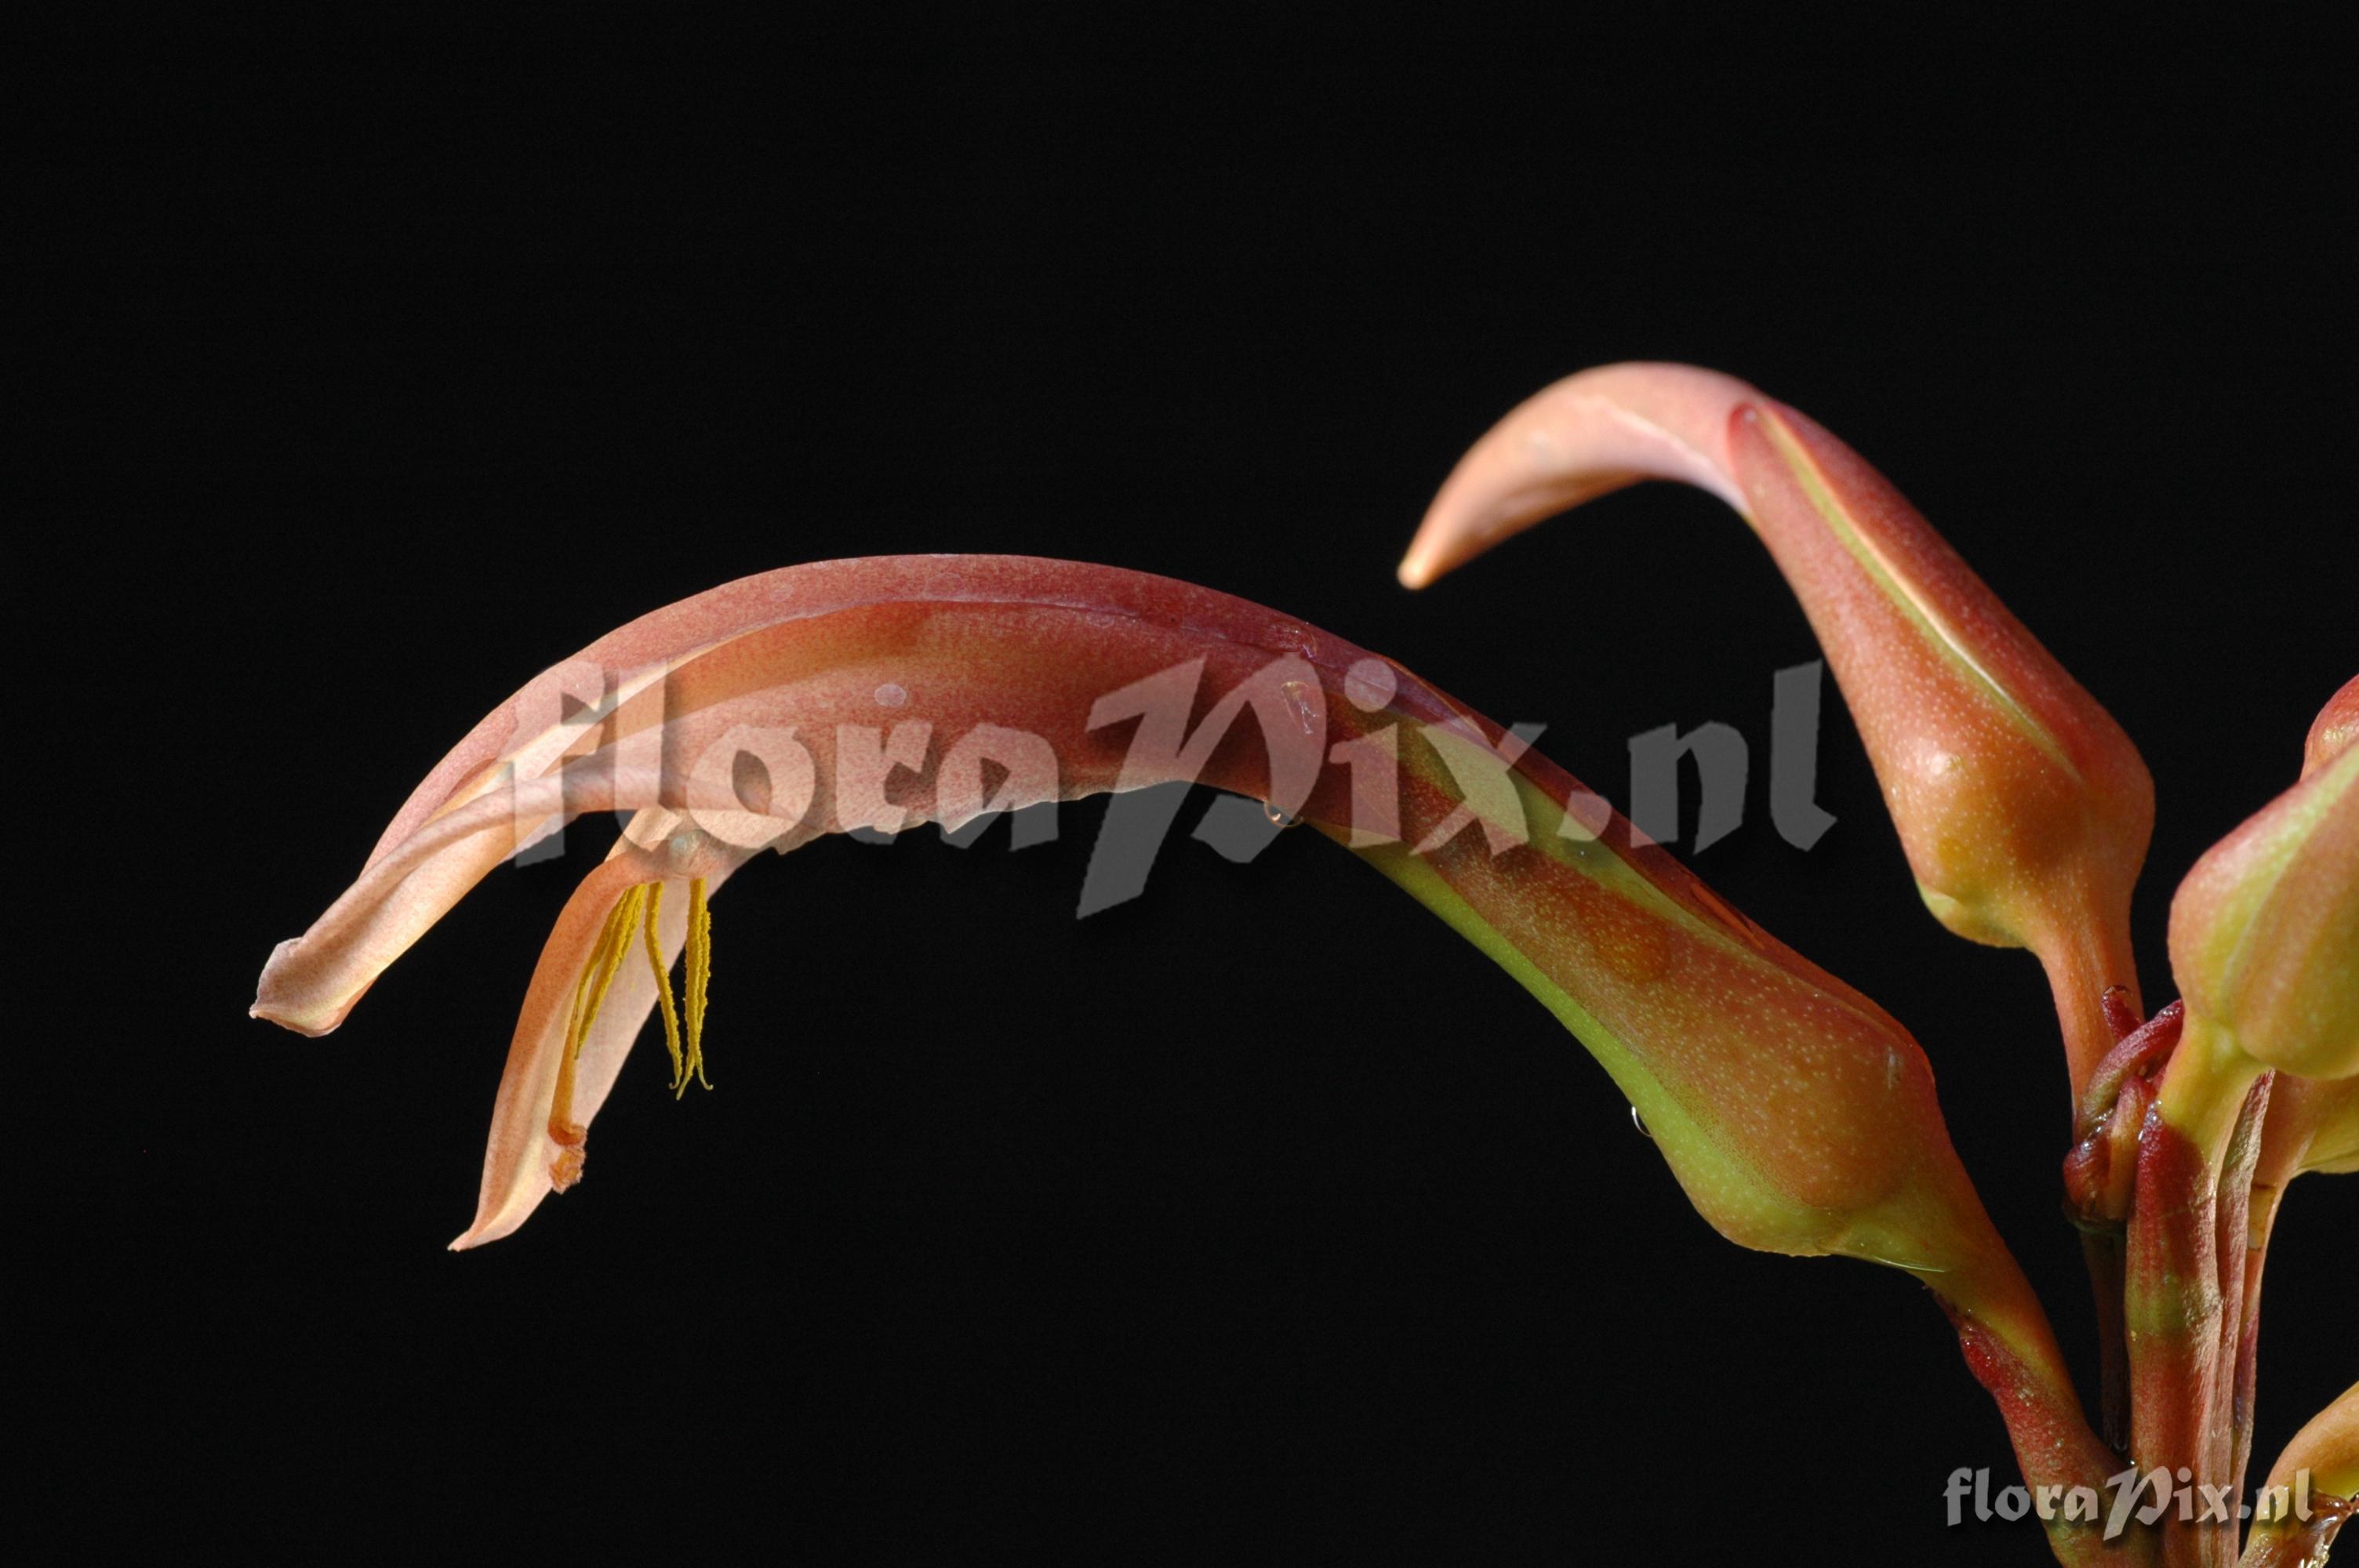 Pitcairnia feliciana 2007GR01344